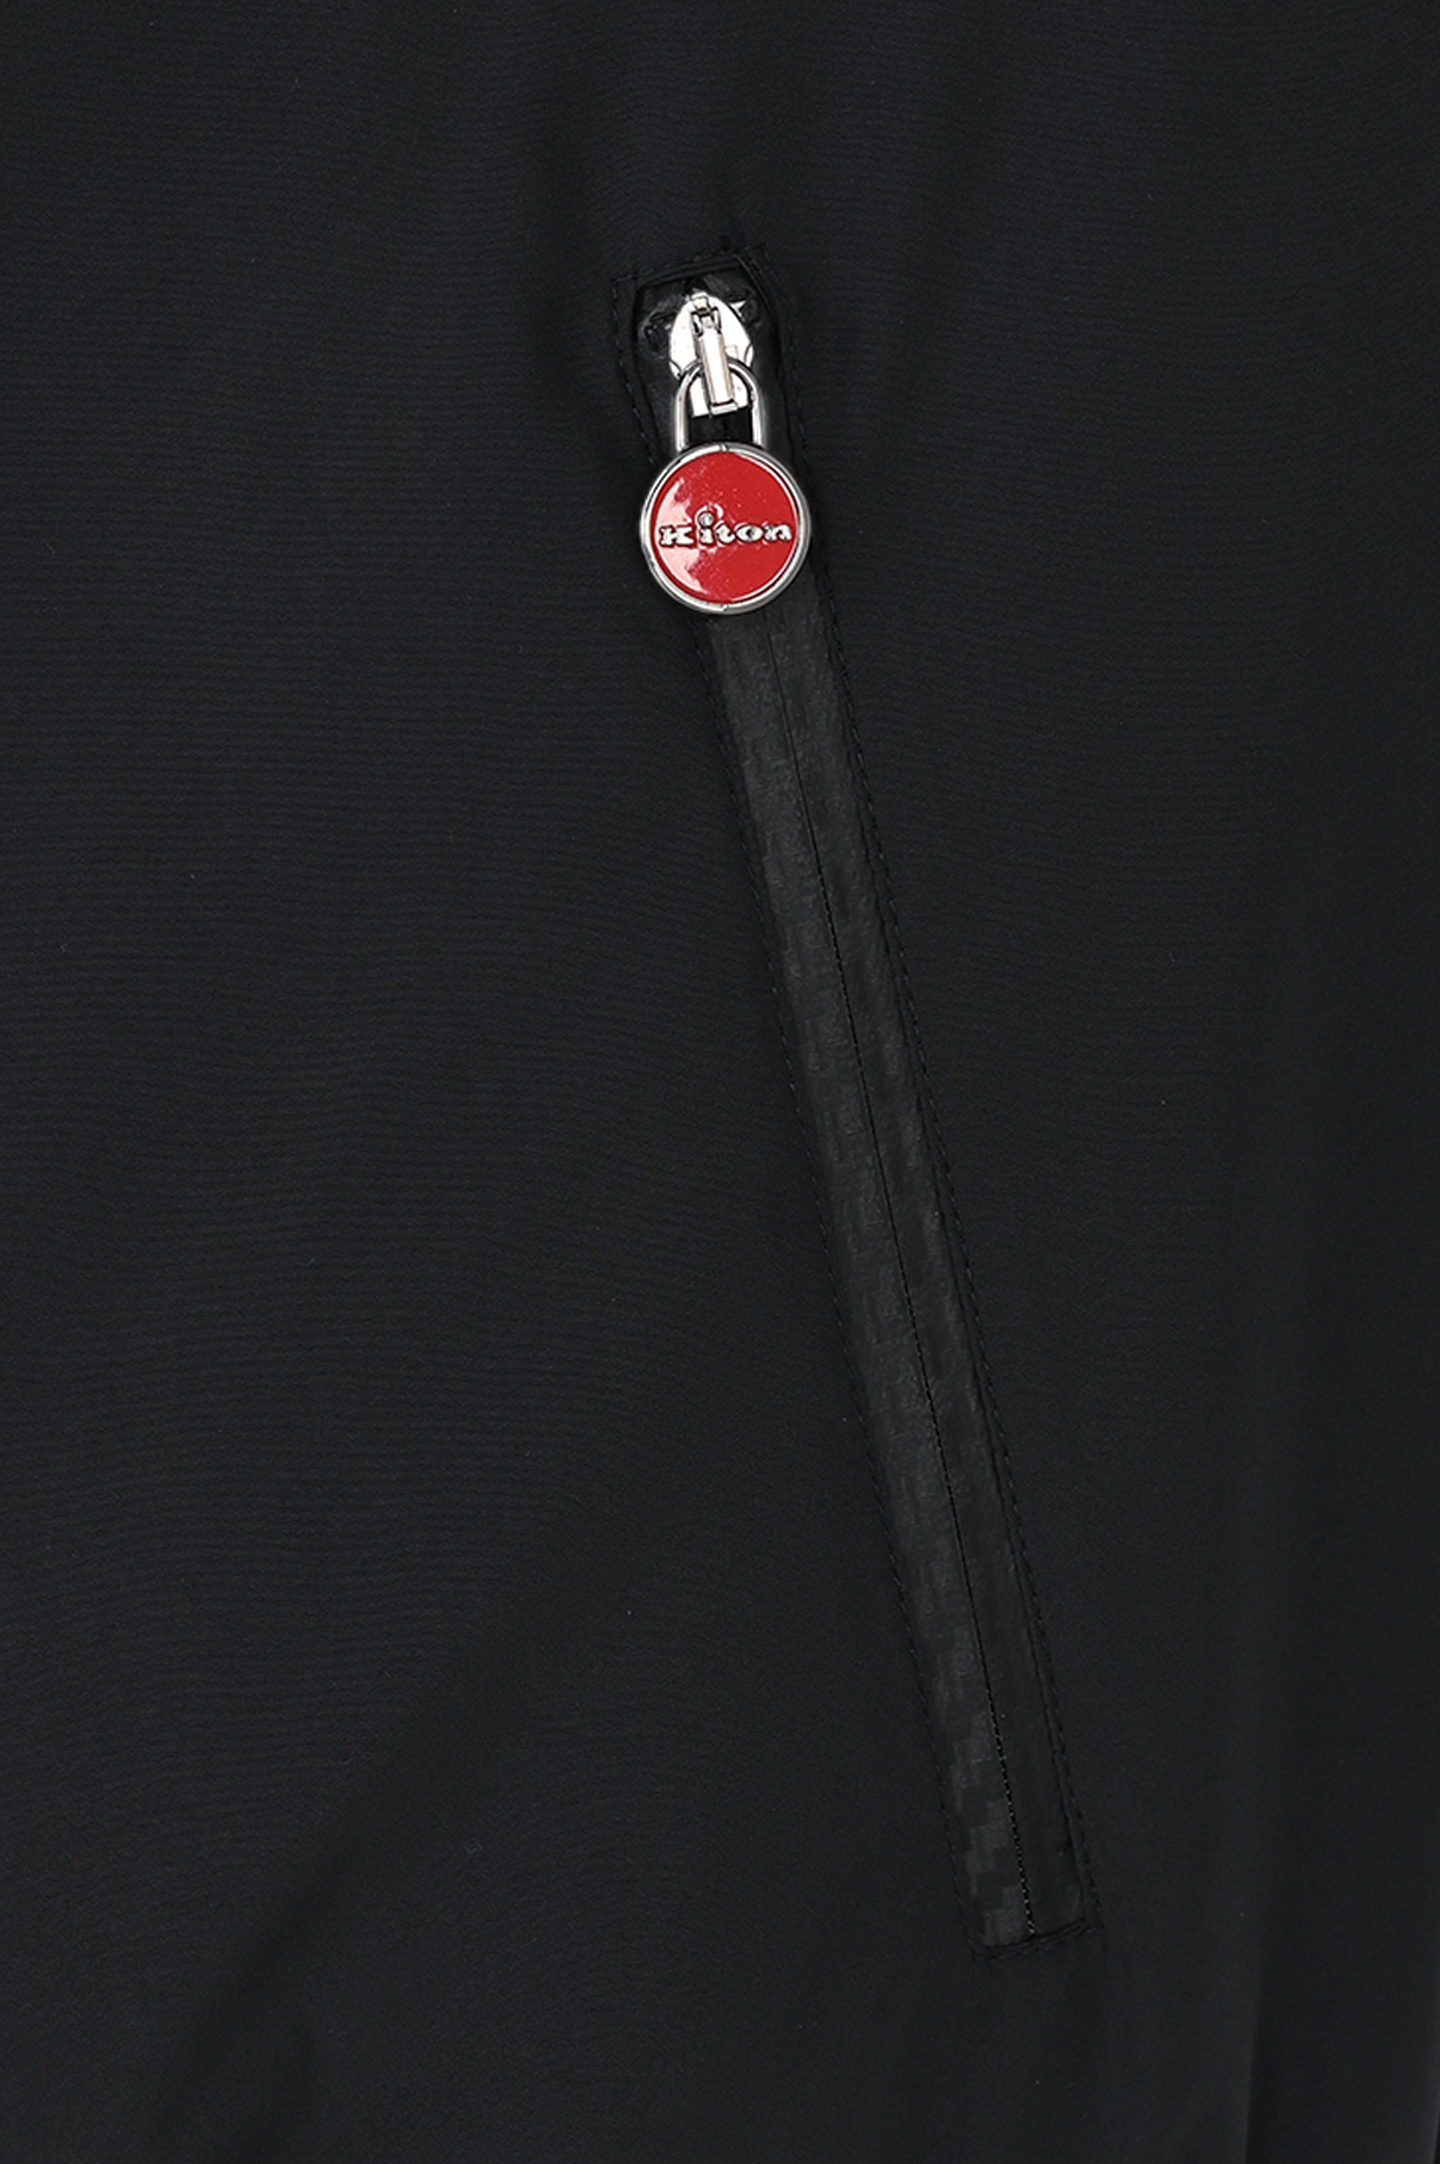 Легкая куртка из полиэстера на молнии KITON UBLMSEAK0710D1, цвет: Черный, Мужской